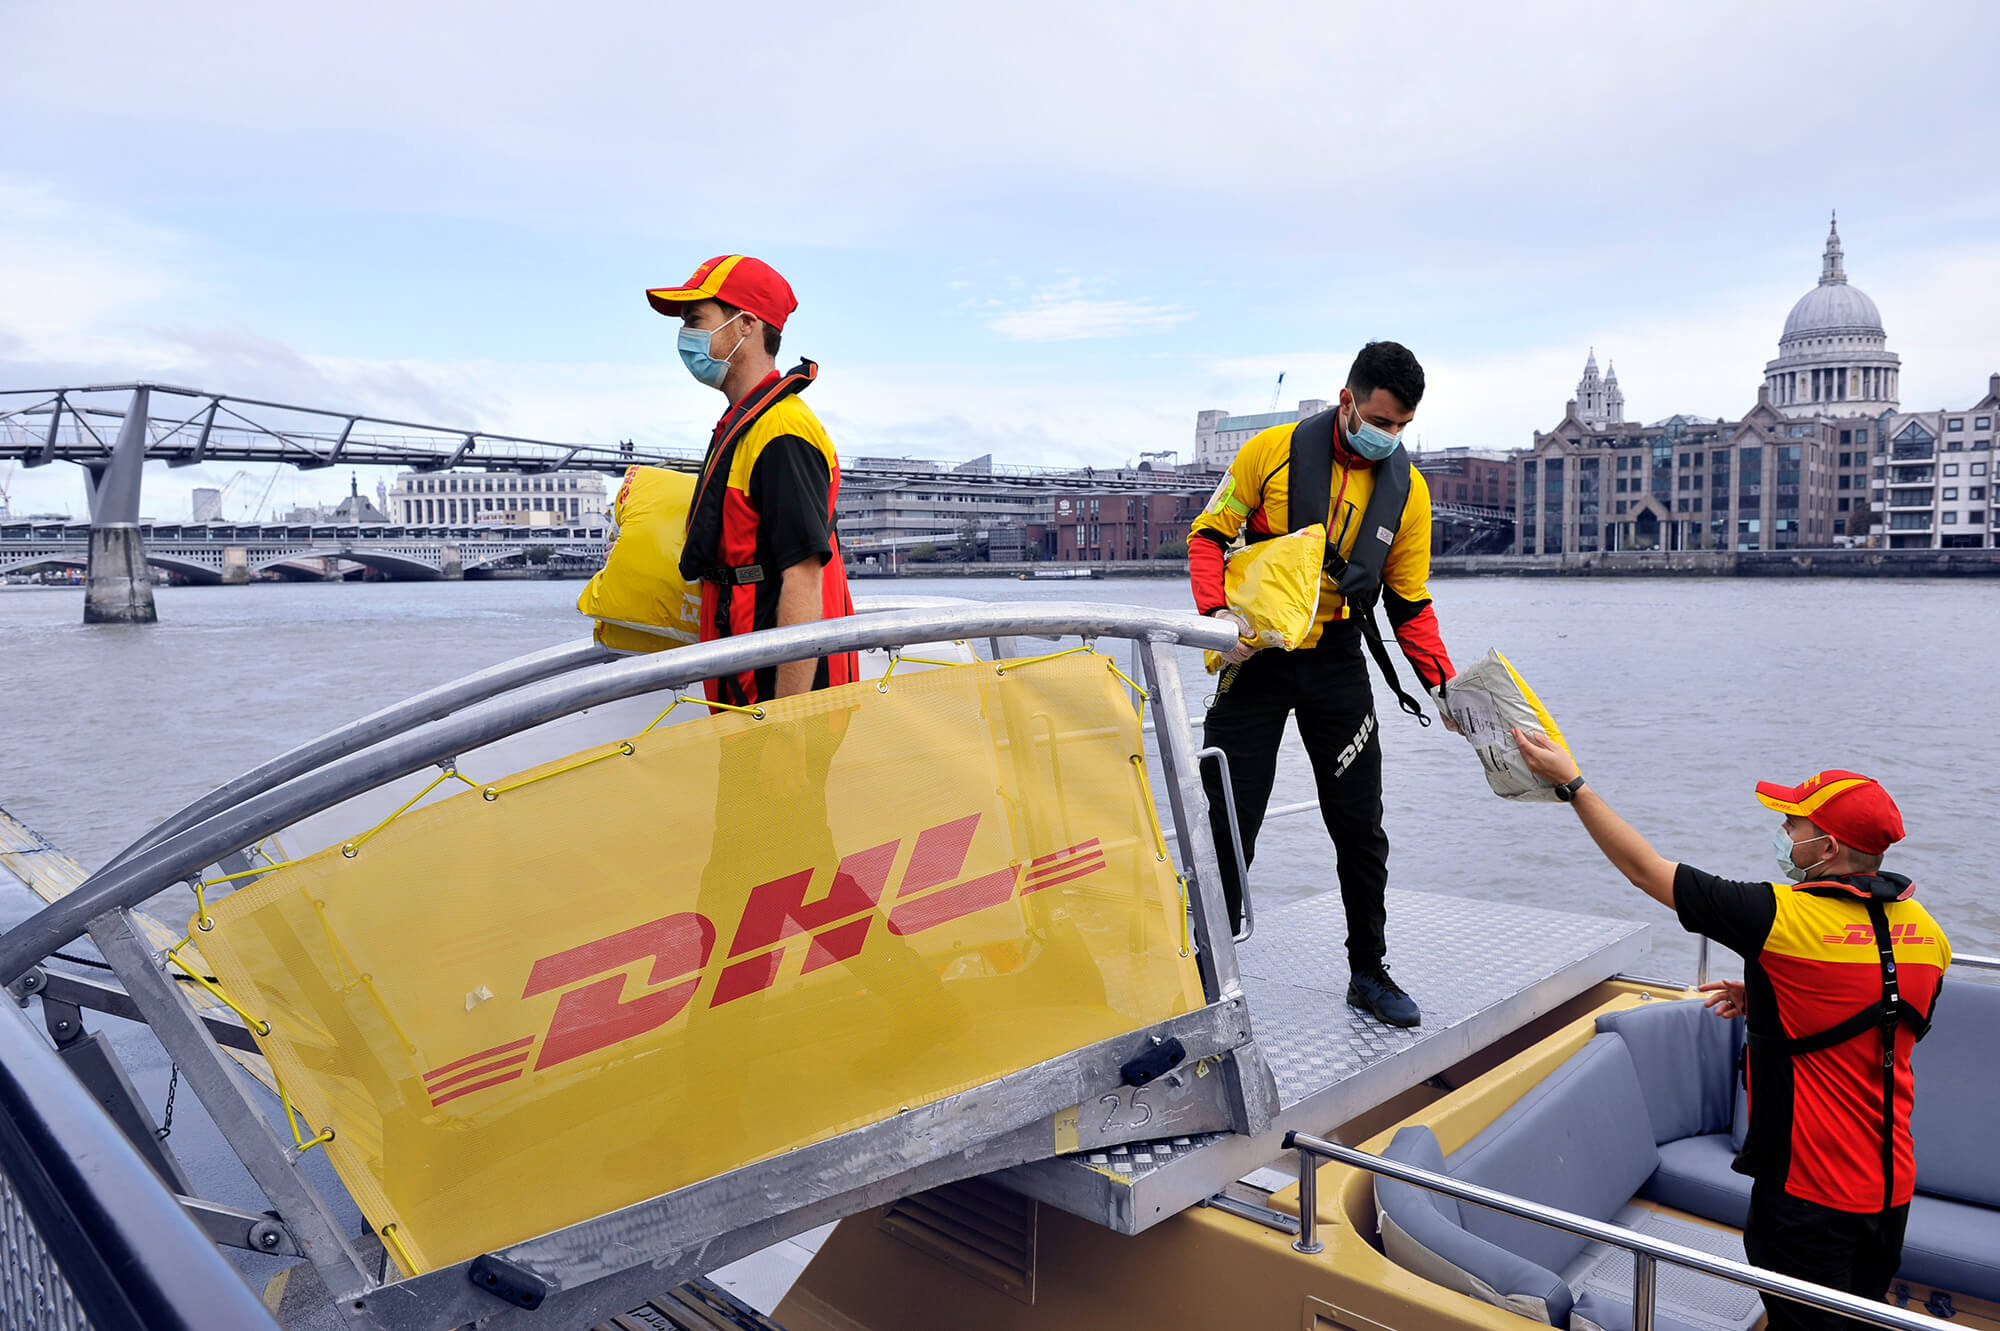 Drei DHL Mitarbeiter entladen ein kleines Schiff. Sie tragen DHL Arbeitskleidung in rot und gelb.